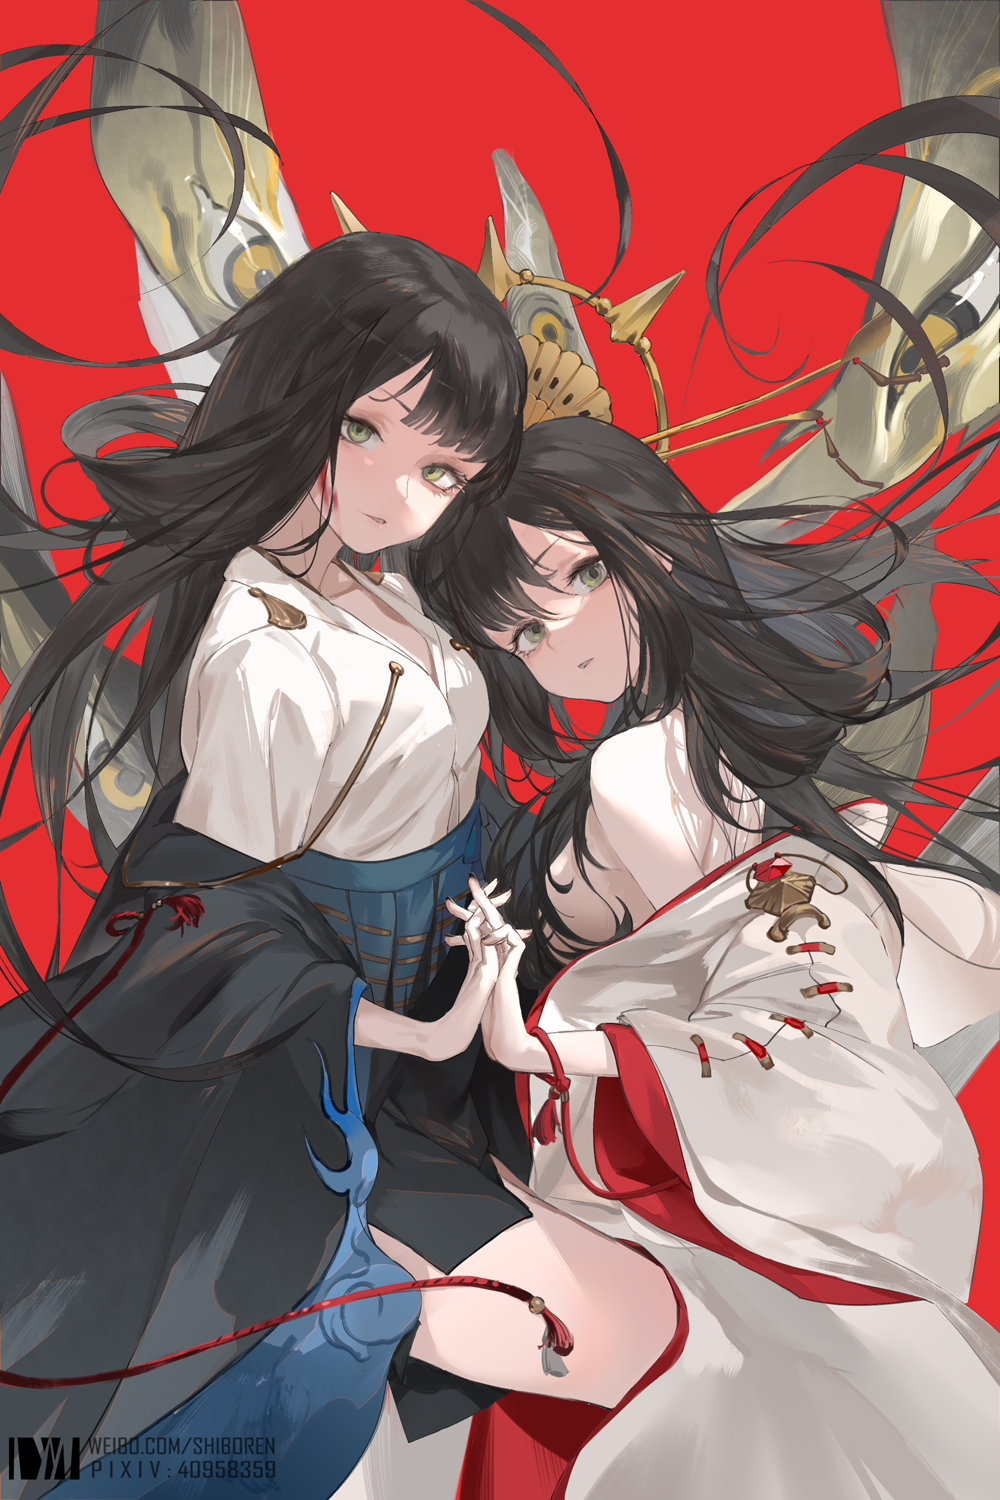 Anime 1000x1500 anime anime girls red background holding hands two women long hair black hair artwork DM (artist)